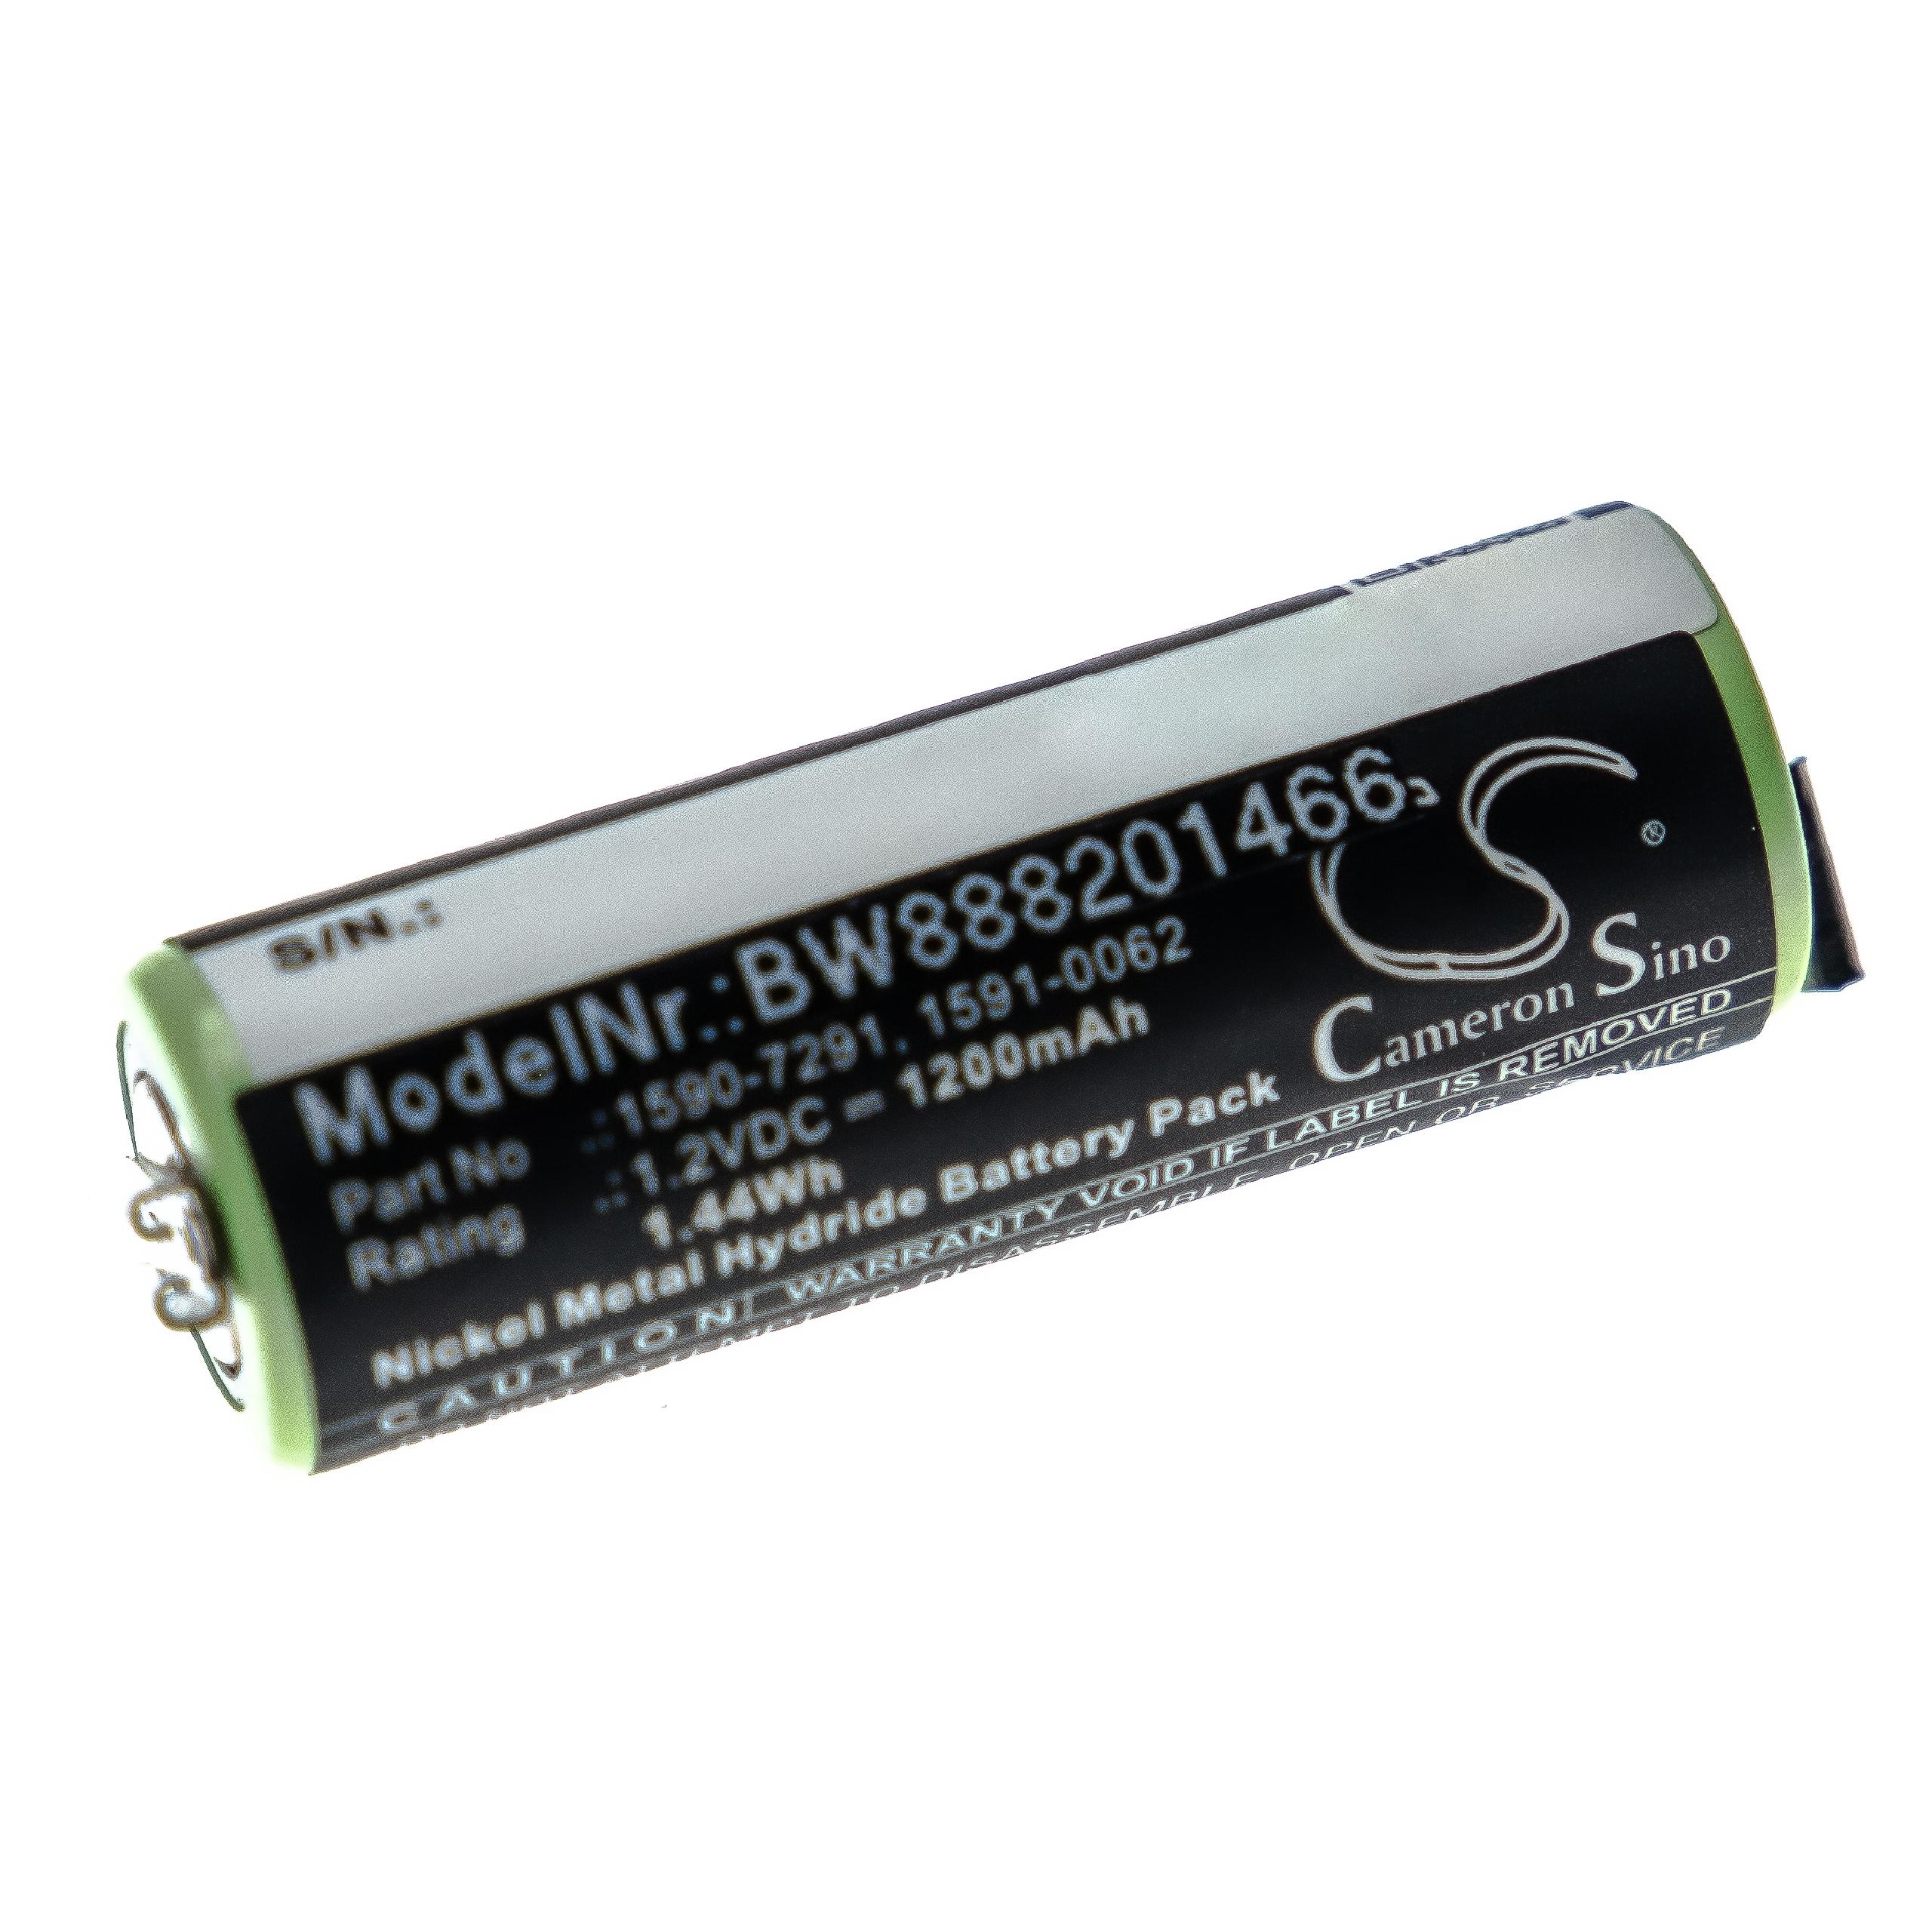 Batterie remplace Moser 1591-0062, 1590-7291, 1591-0067 pour rasoir électrique - 1200mAh 1,2V NiMH